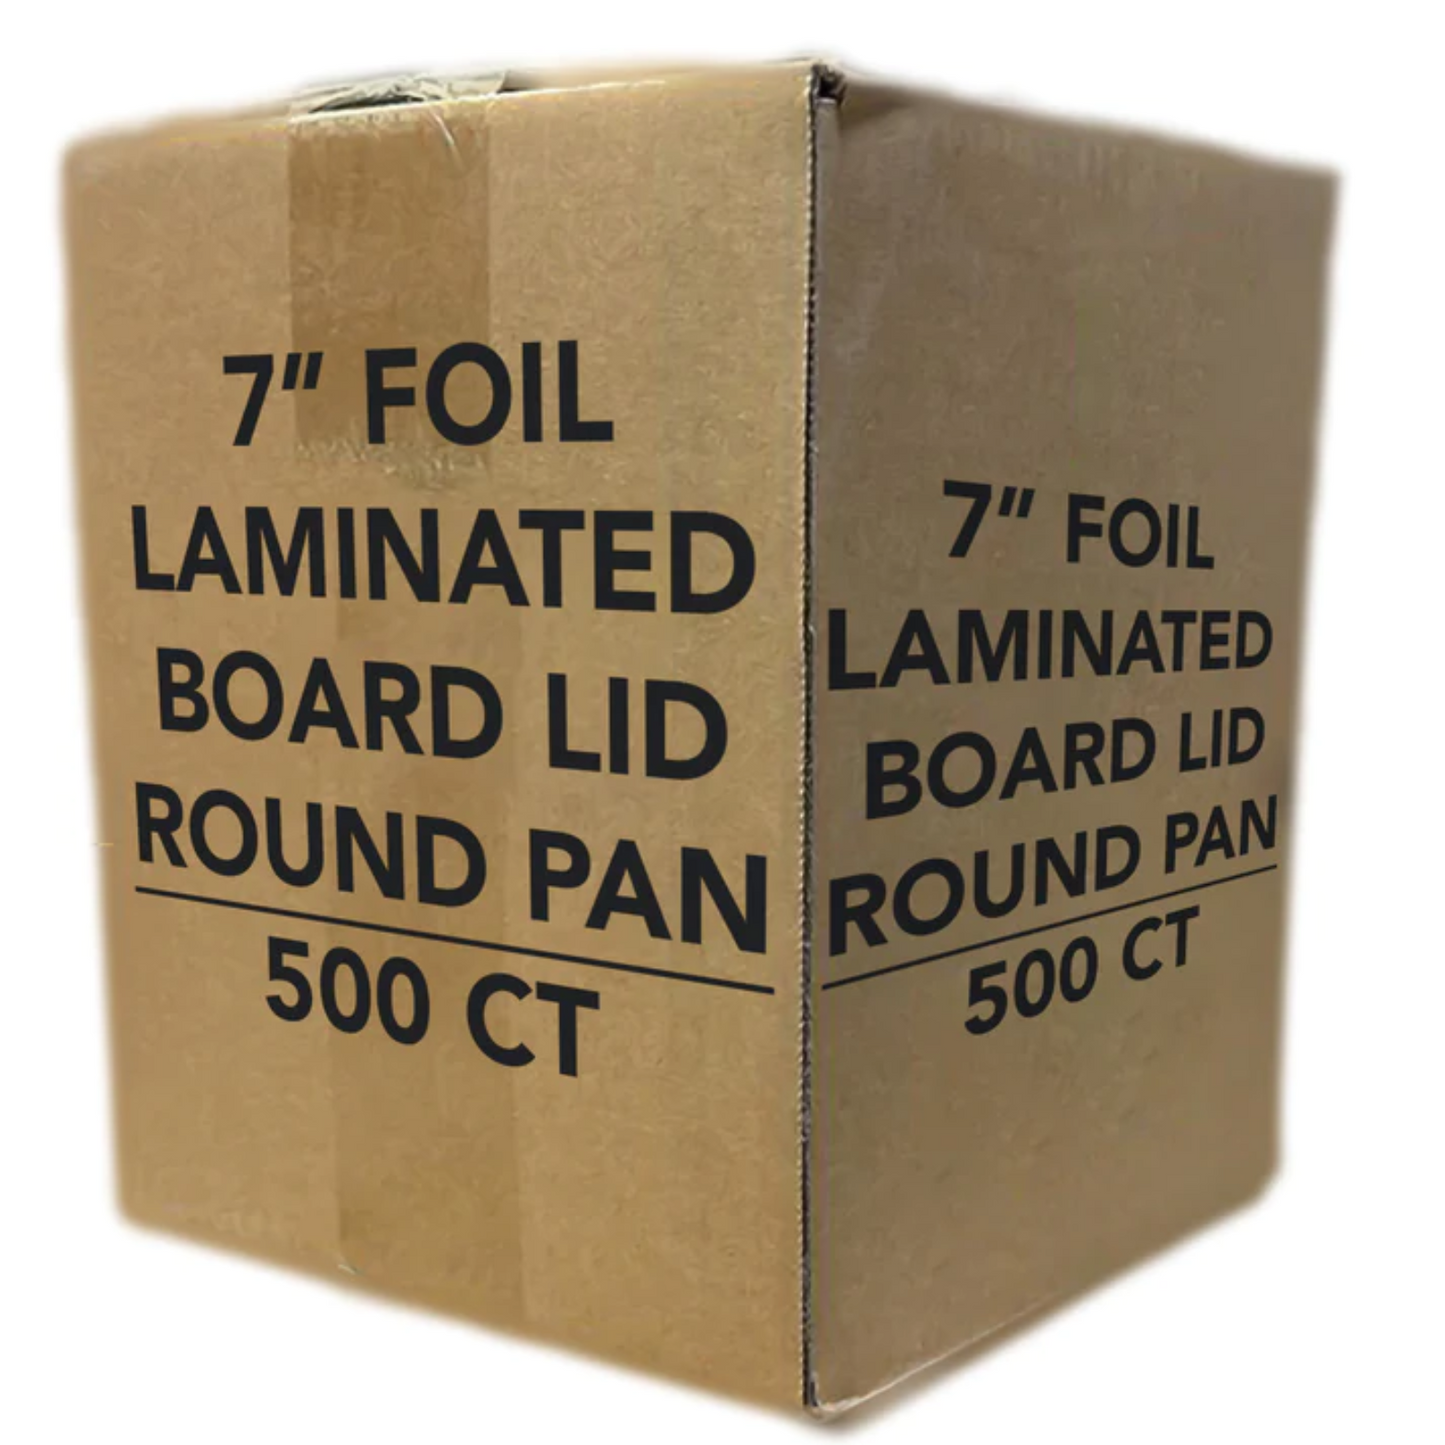 *WHOLESALE* Board Lids for 7" Aluminum Round Pan| 500 ct/case Disposable JetFoil   